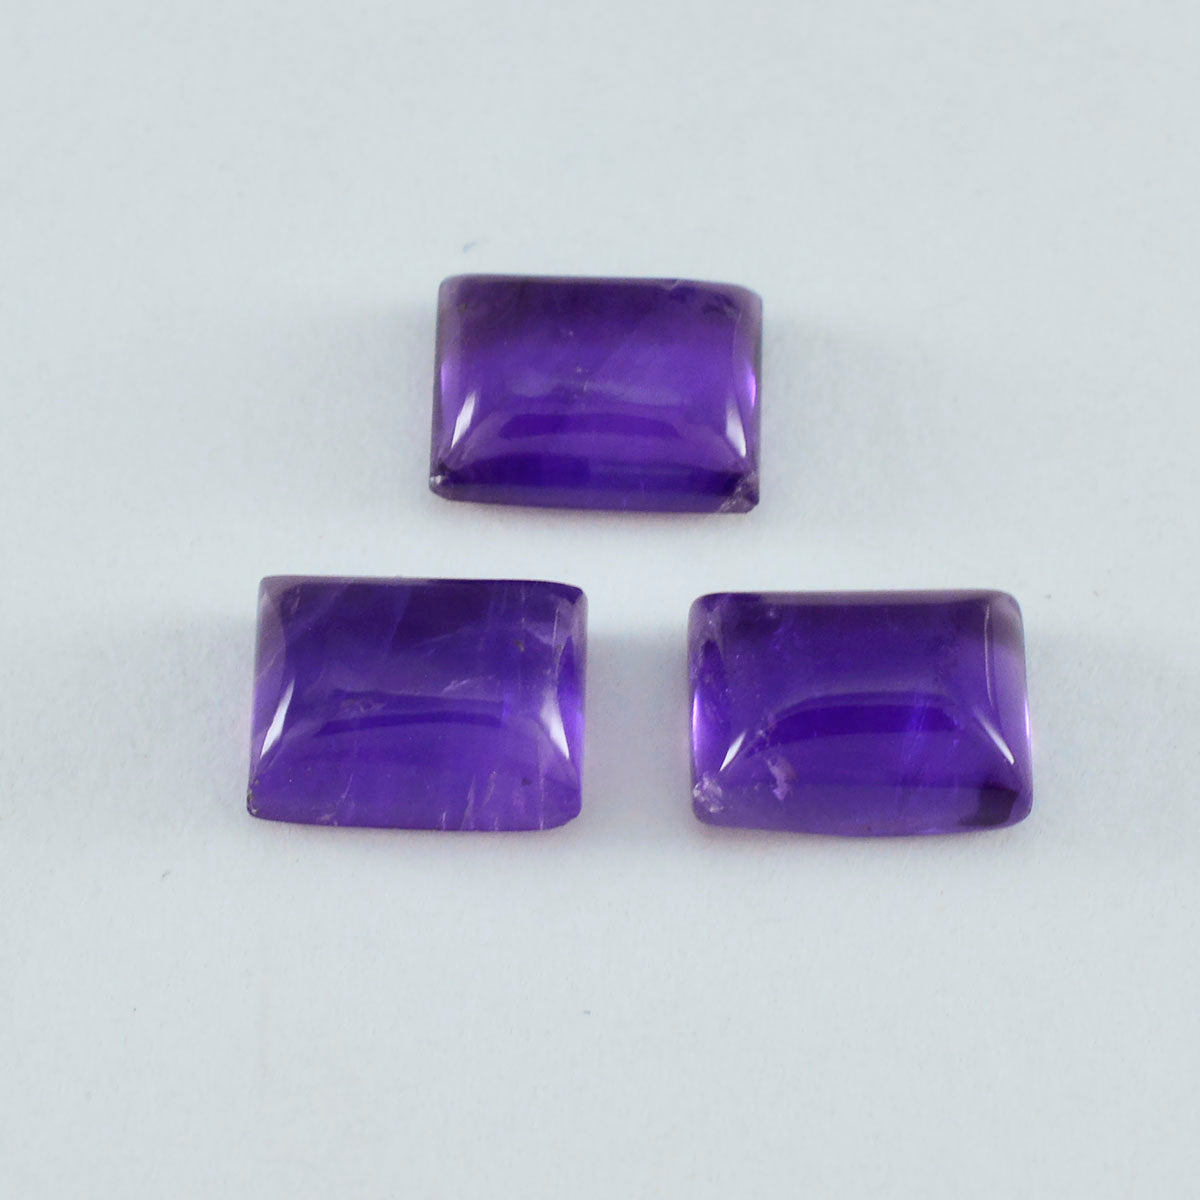 Riyogems 1PC Purple Amethyst Cabochon 5x7 mm Octagon Shape lovely Quality Gem